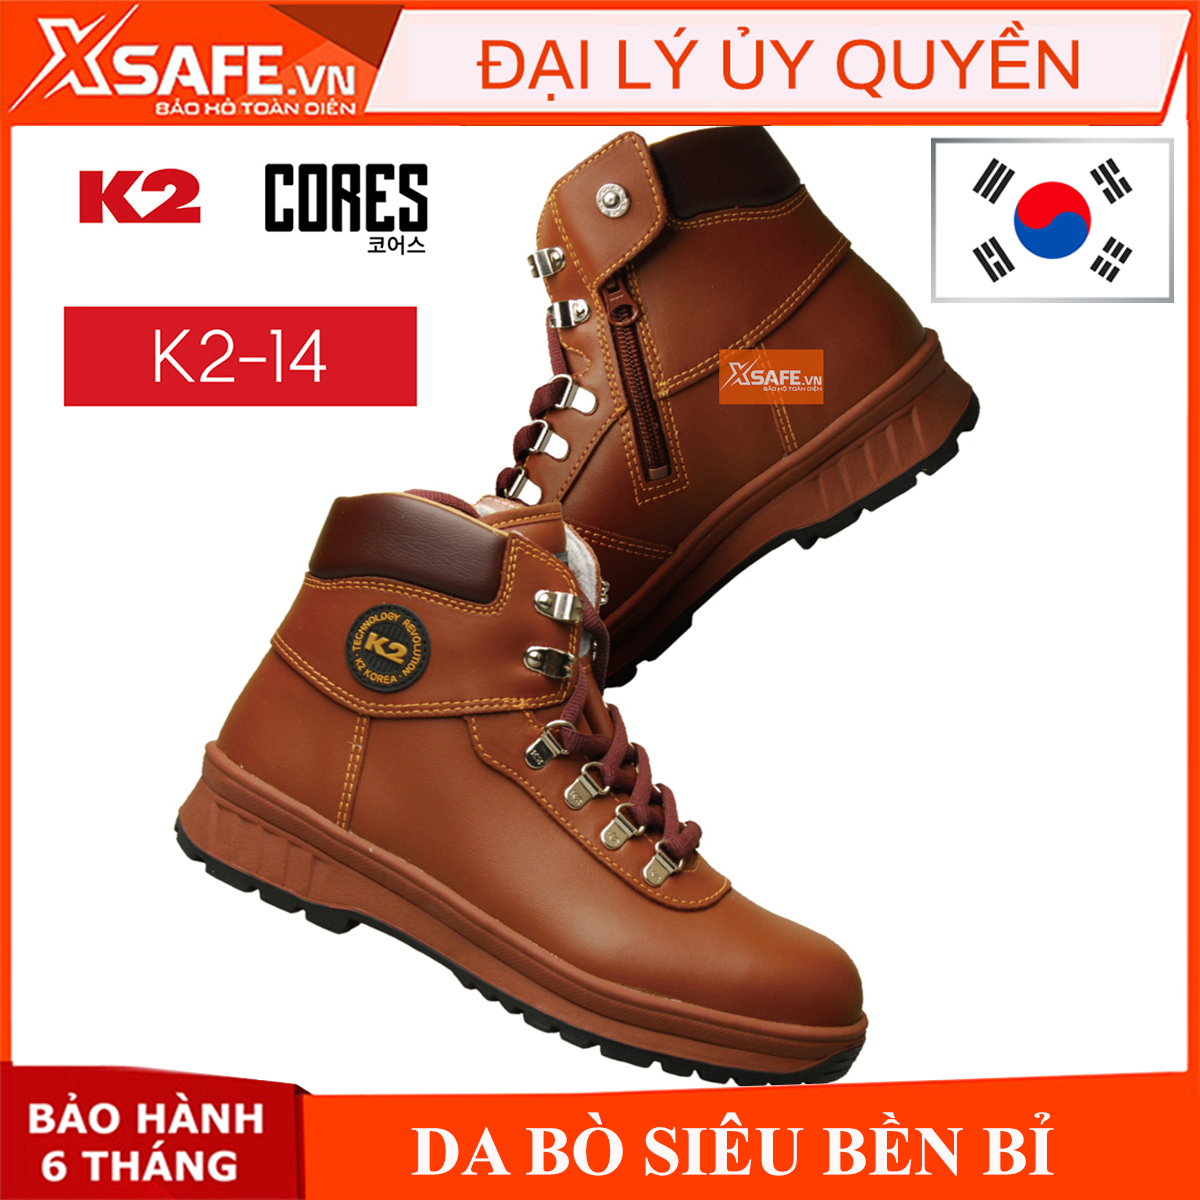 Giày bảo hộ K2-14 Giày bảo hộ lao động Hàn Quốc da bò thật chống nước, chống nứt gãy, độ bền cao, chính hãng K2 SAFETY